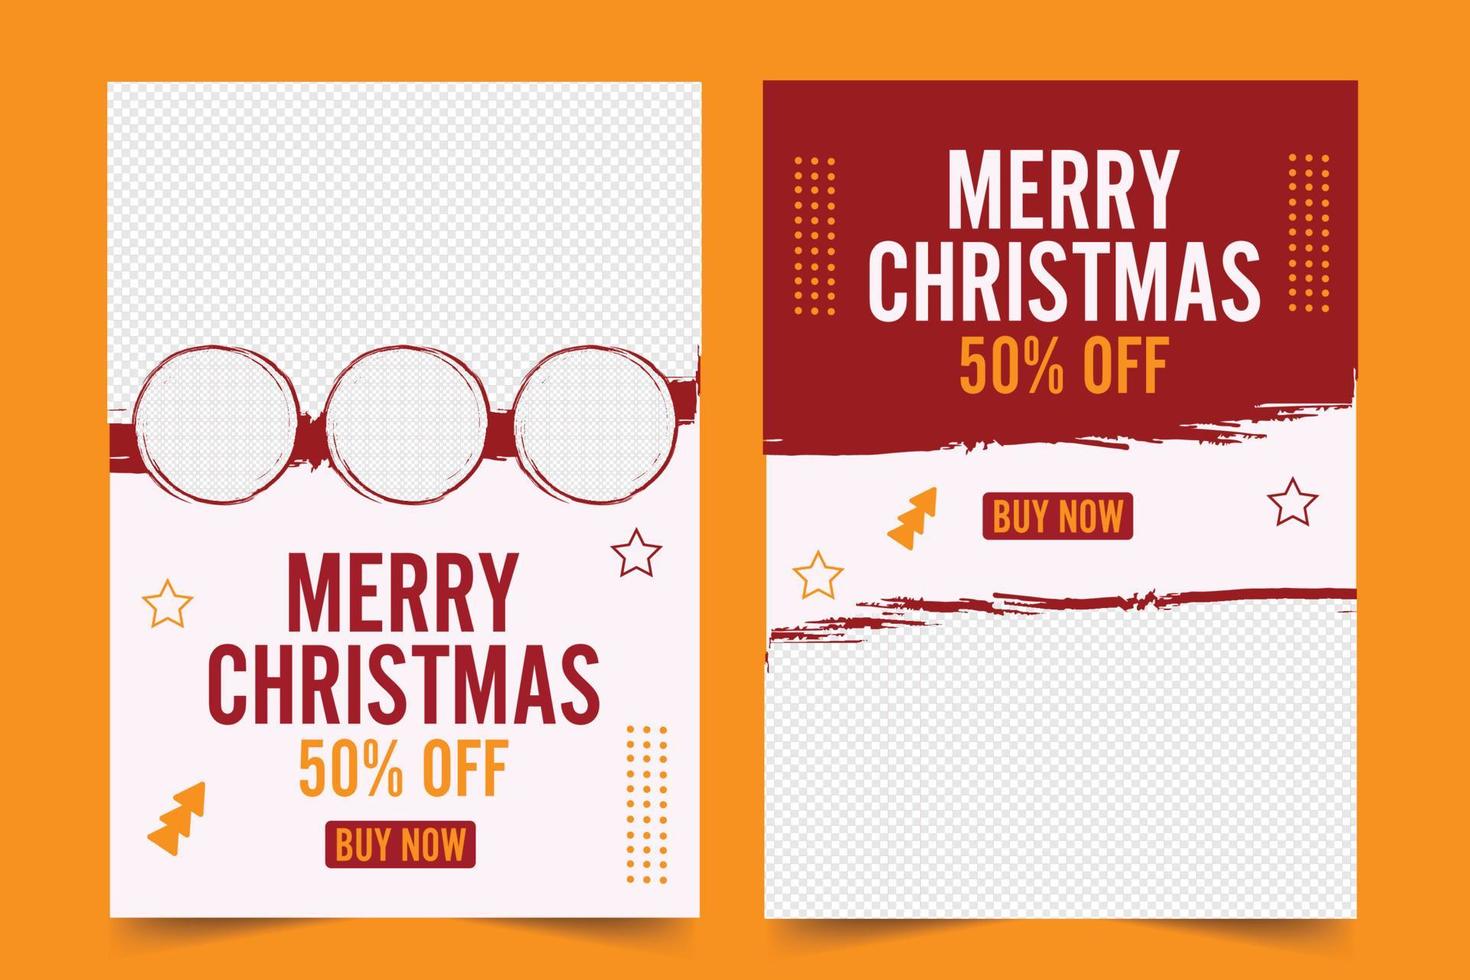 Navidad invitación impresión folleto y rebaja promocional póster modelo vector